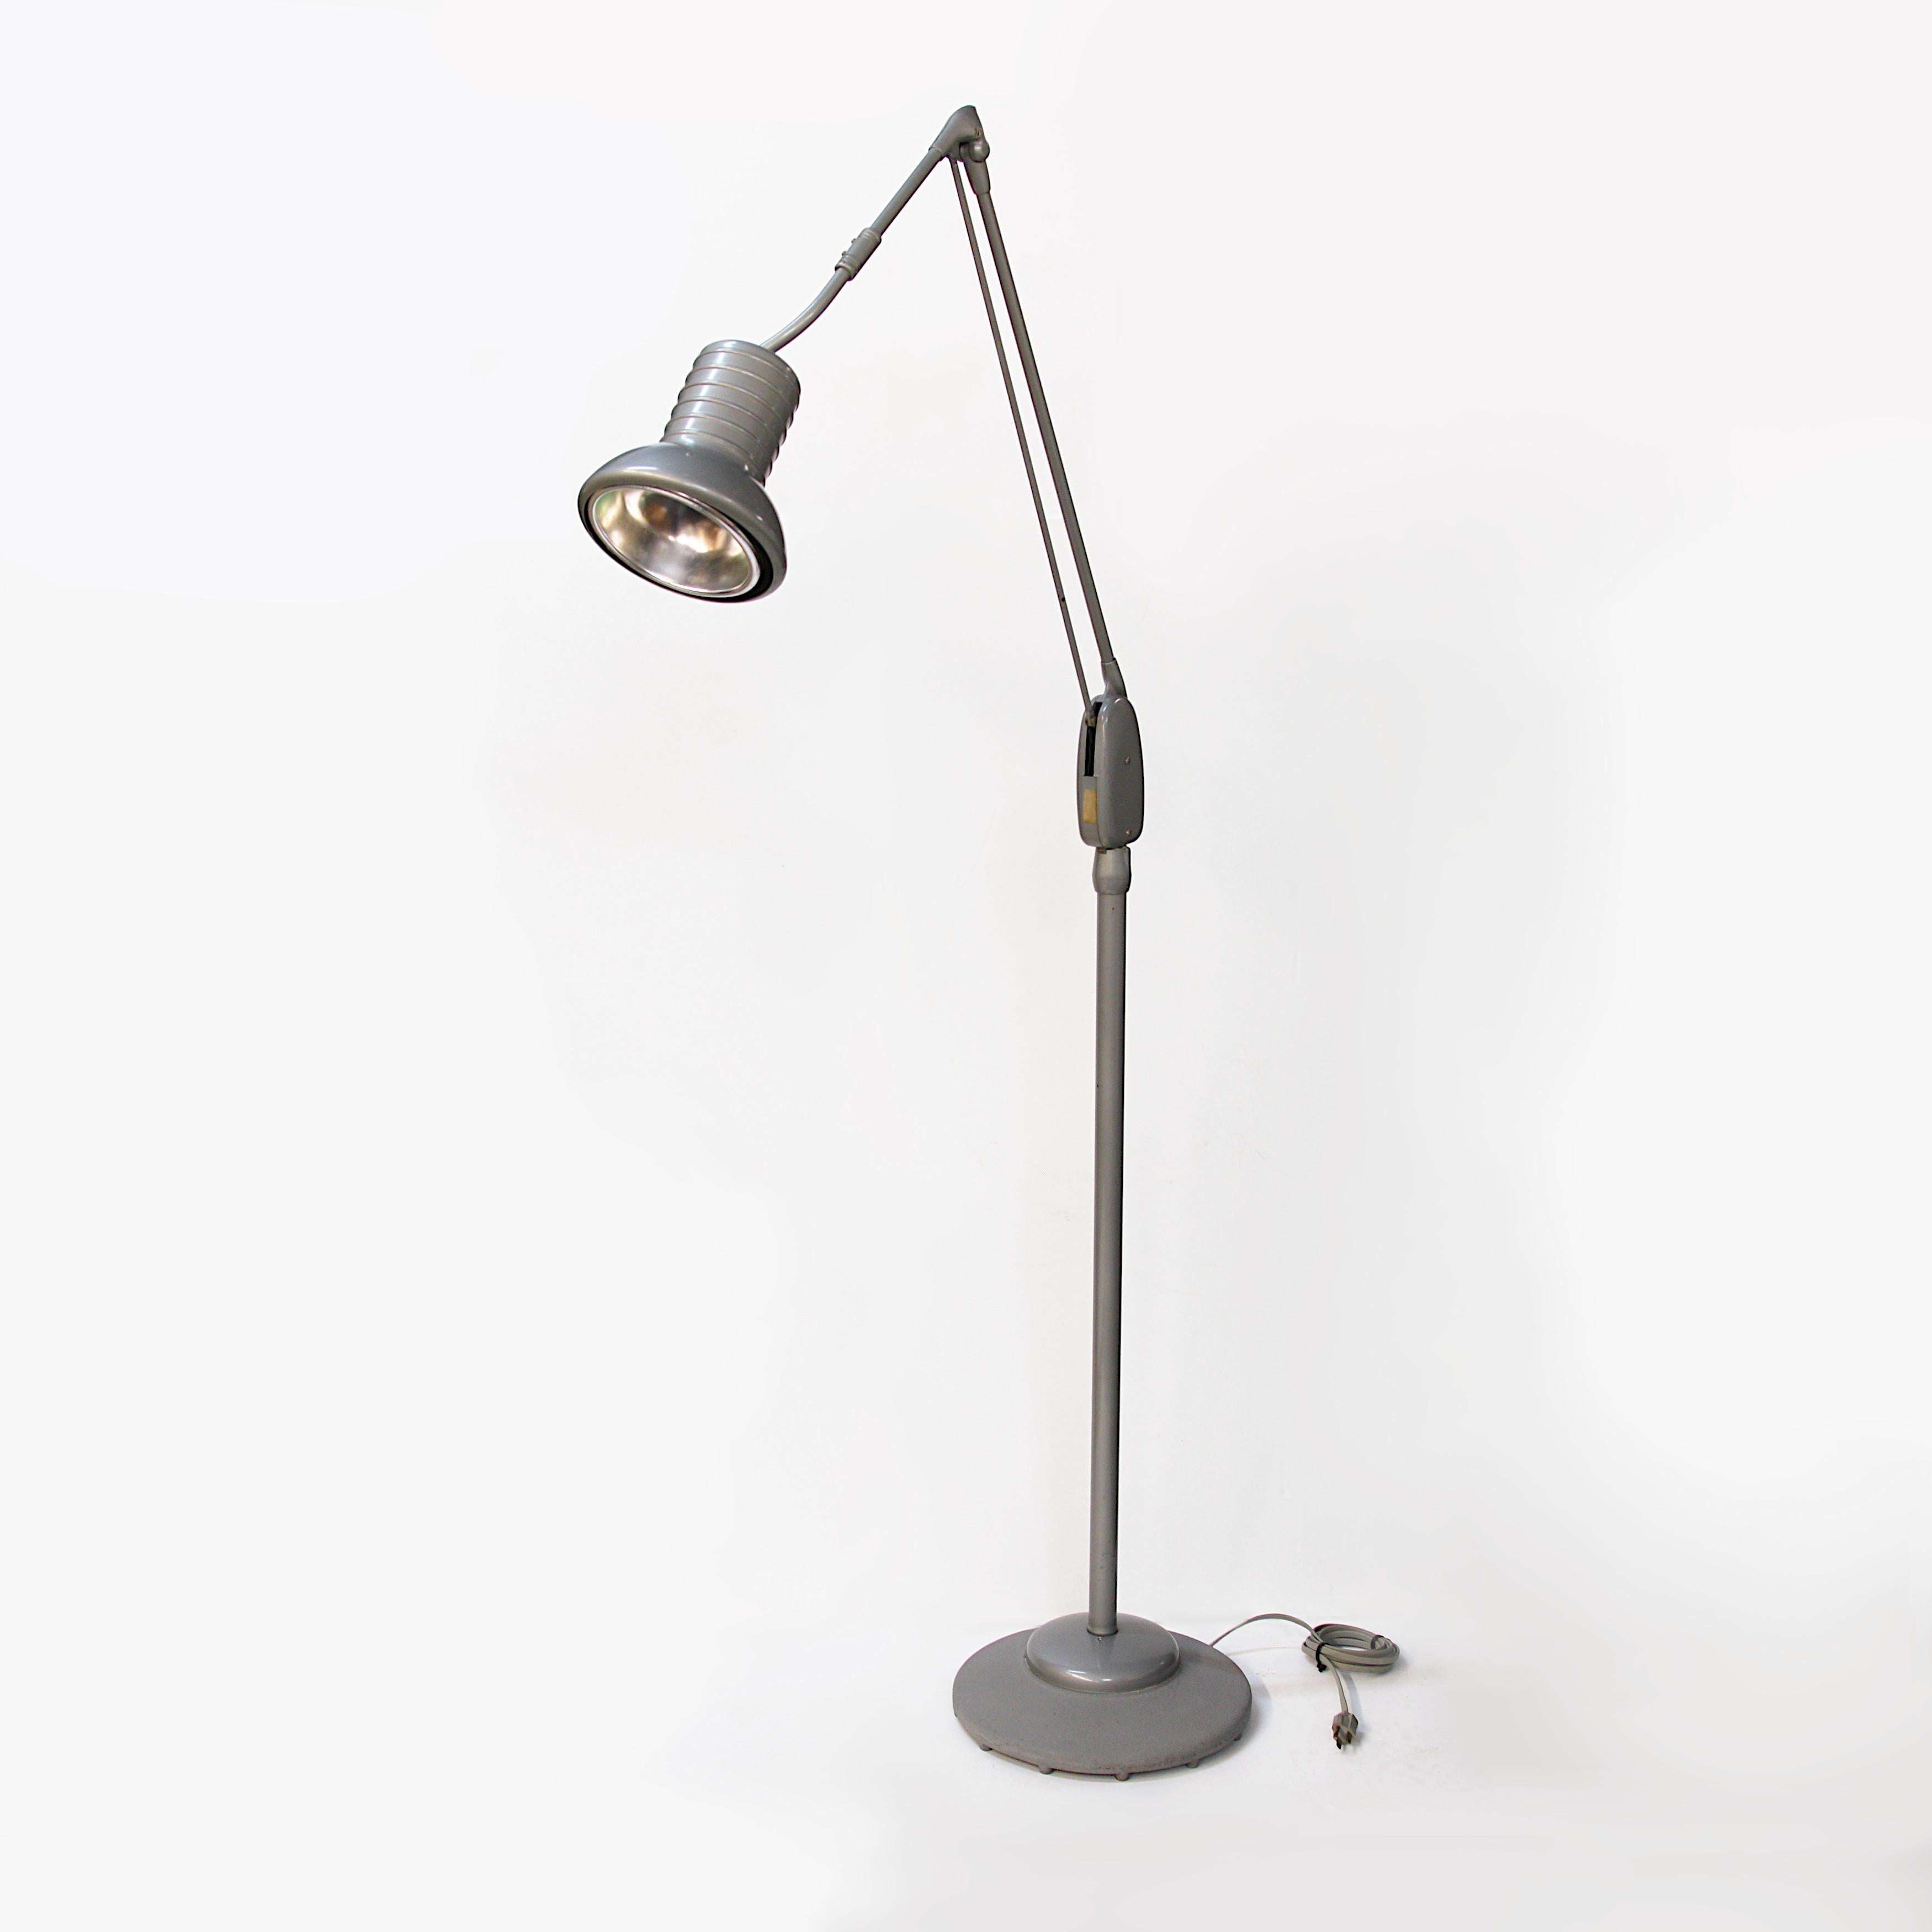 Diese Lampe ist ein seltenes Stück modernen Industriedesigns aus der Mitte des Jahrhunderts und weist die schwer zu findende, originale grau/silberne Farbe auf, die die Form wunderschön zur Geltung bringt. Diese Leuchte hat jedoch auch eine